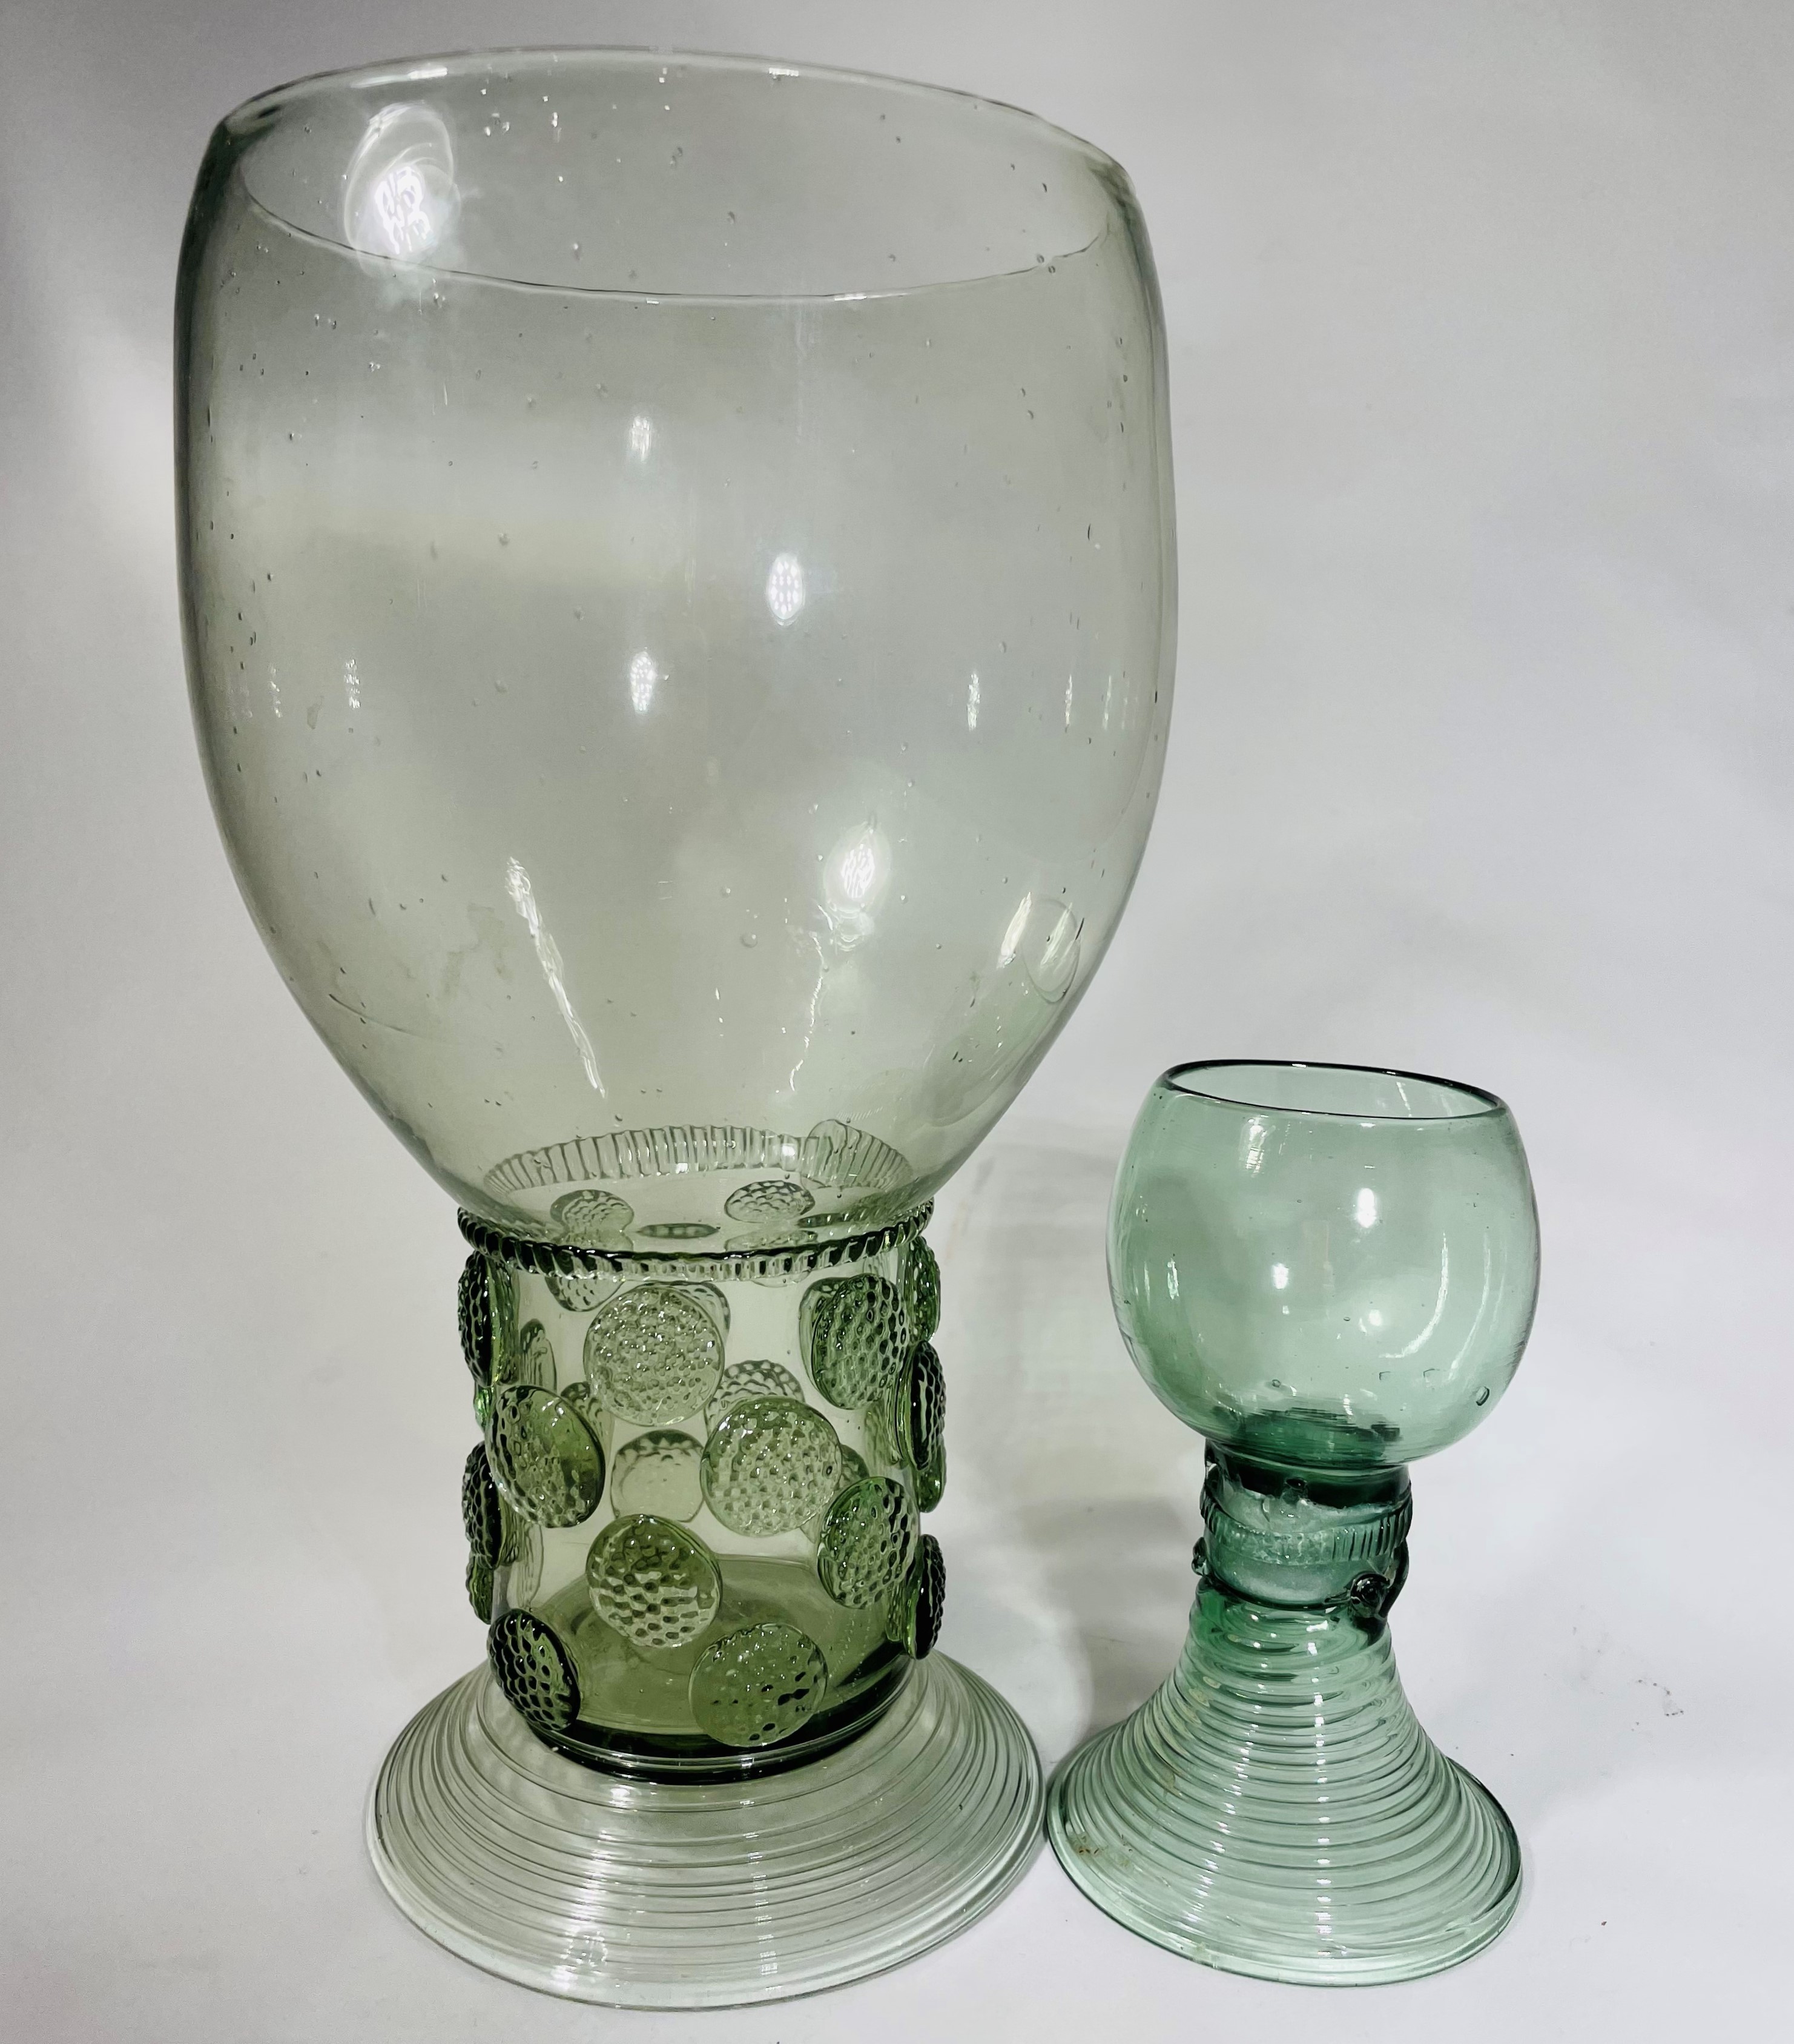 XL Roemer glass, style. XL Roemer antieke stijl. Online shop